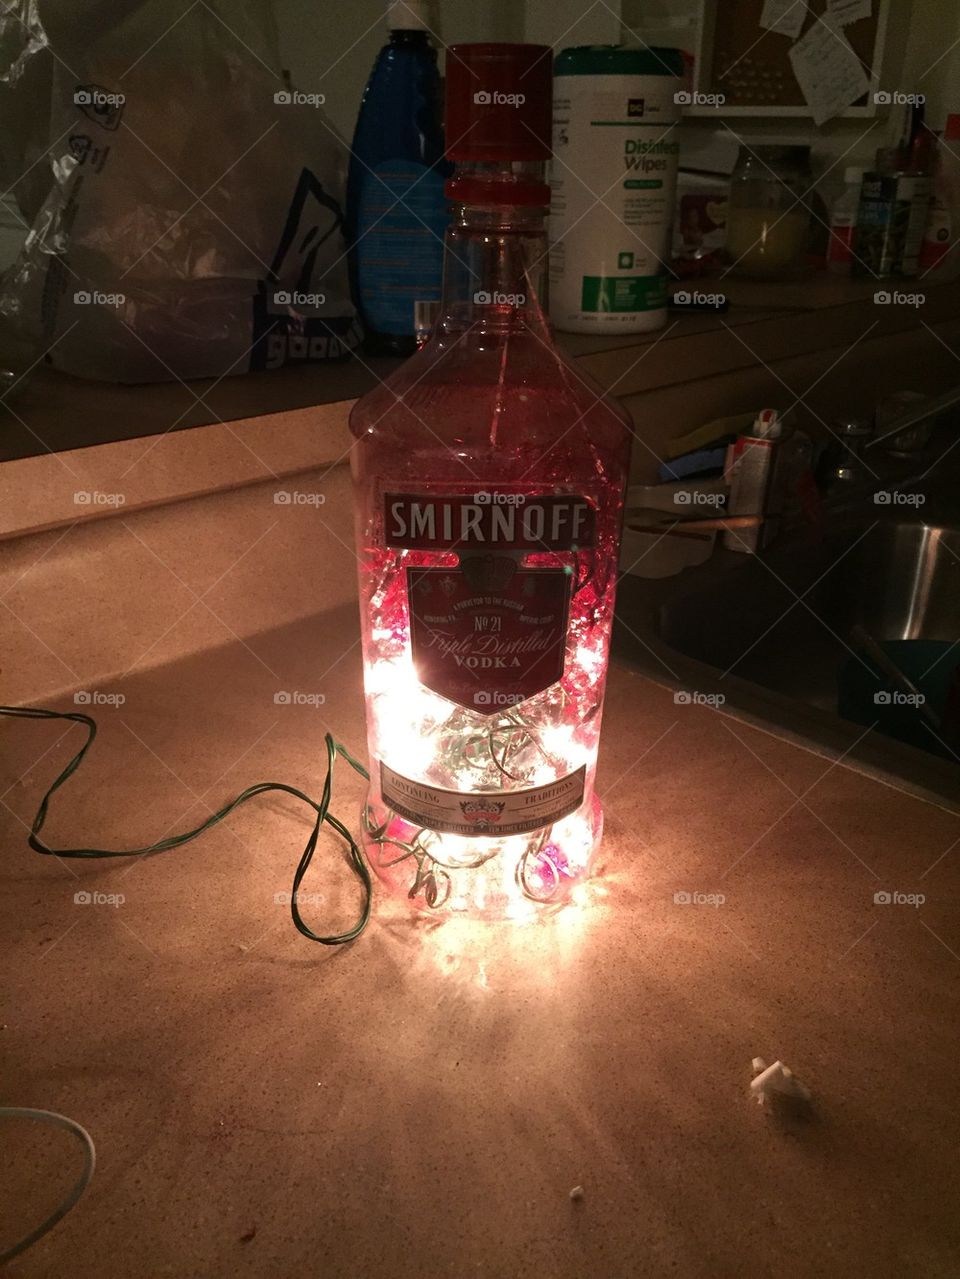 Smirnoff lamp